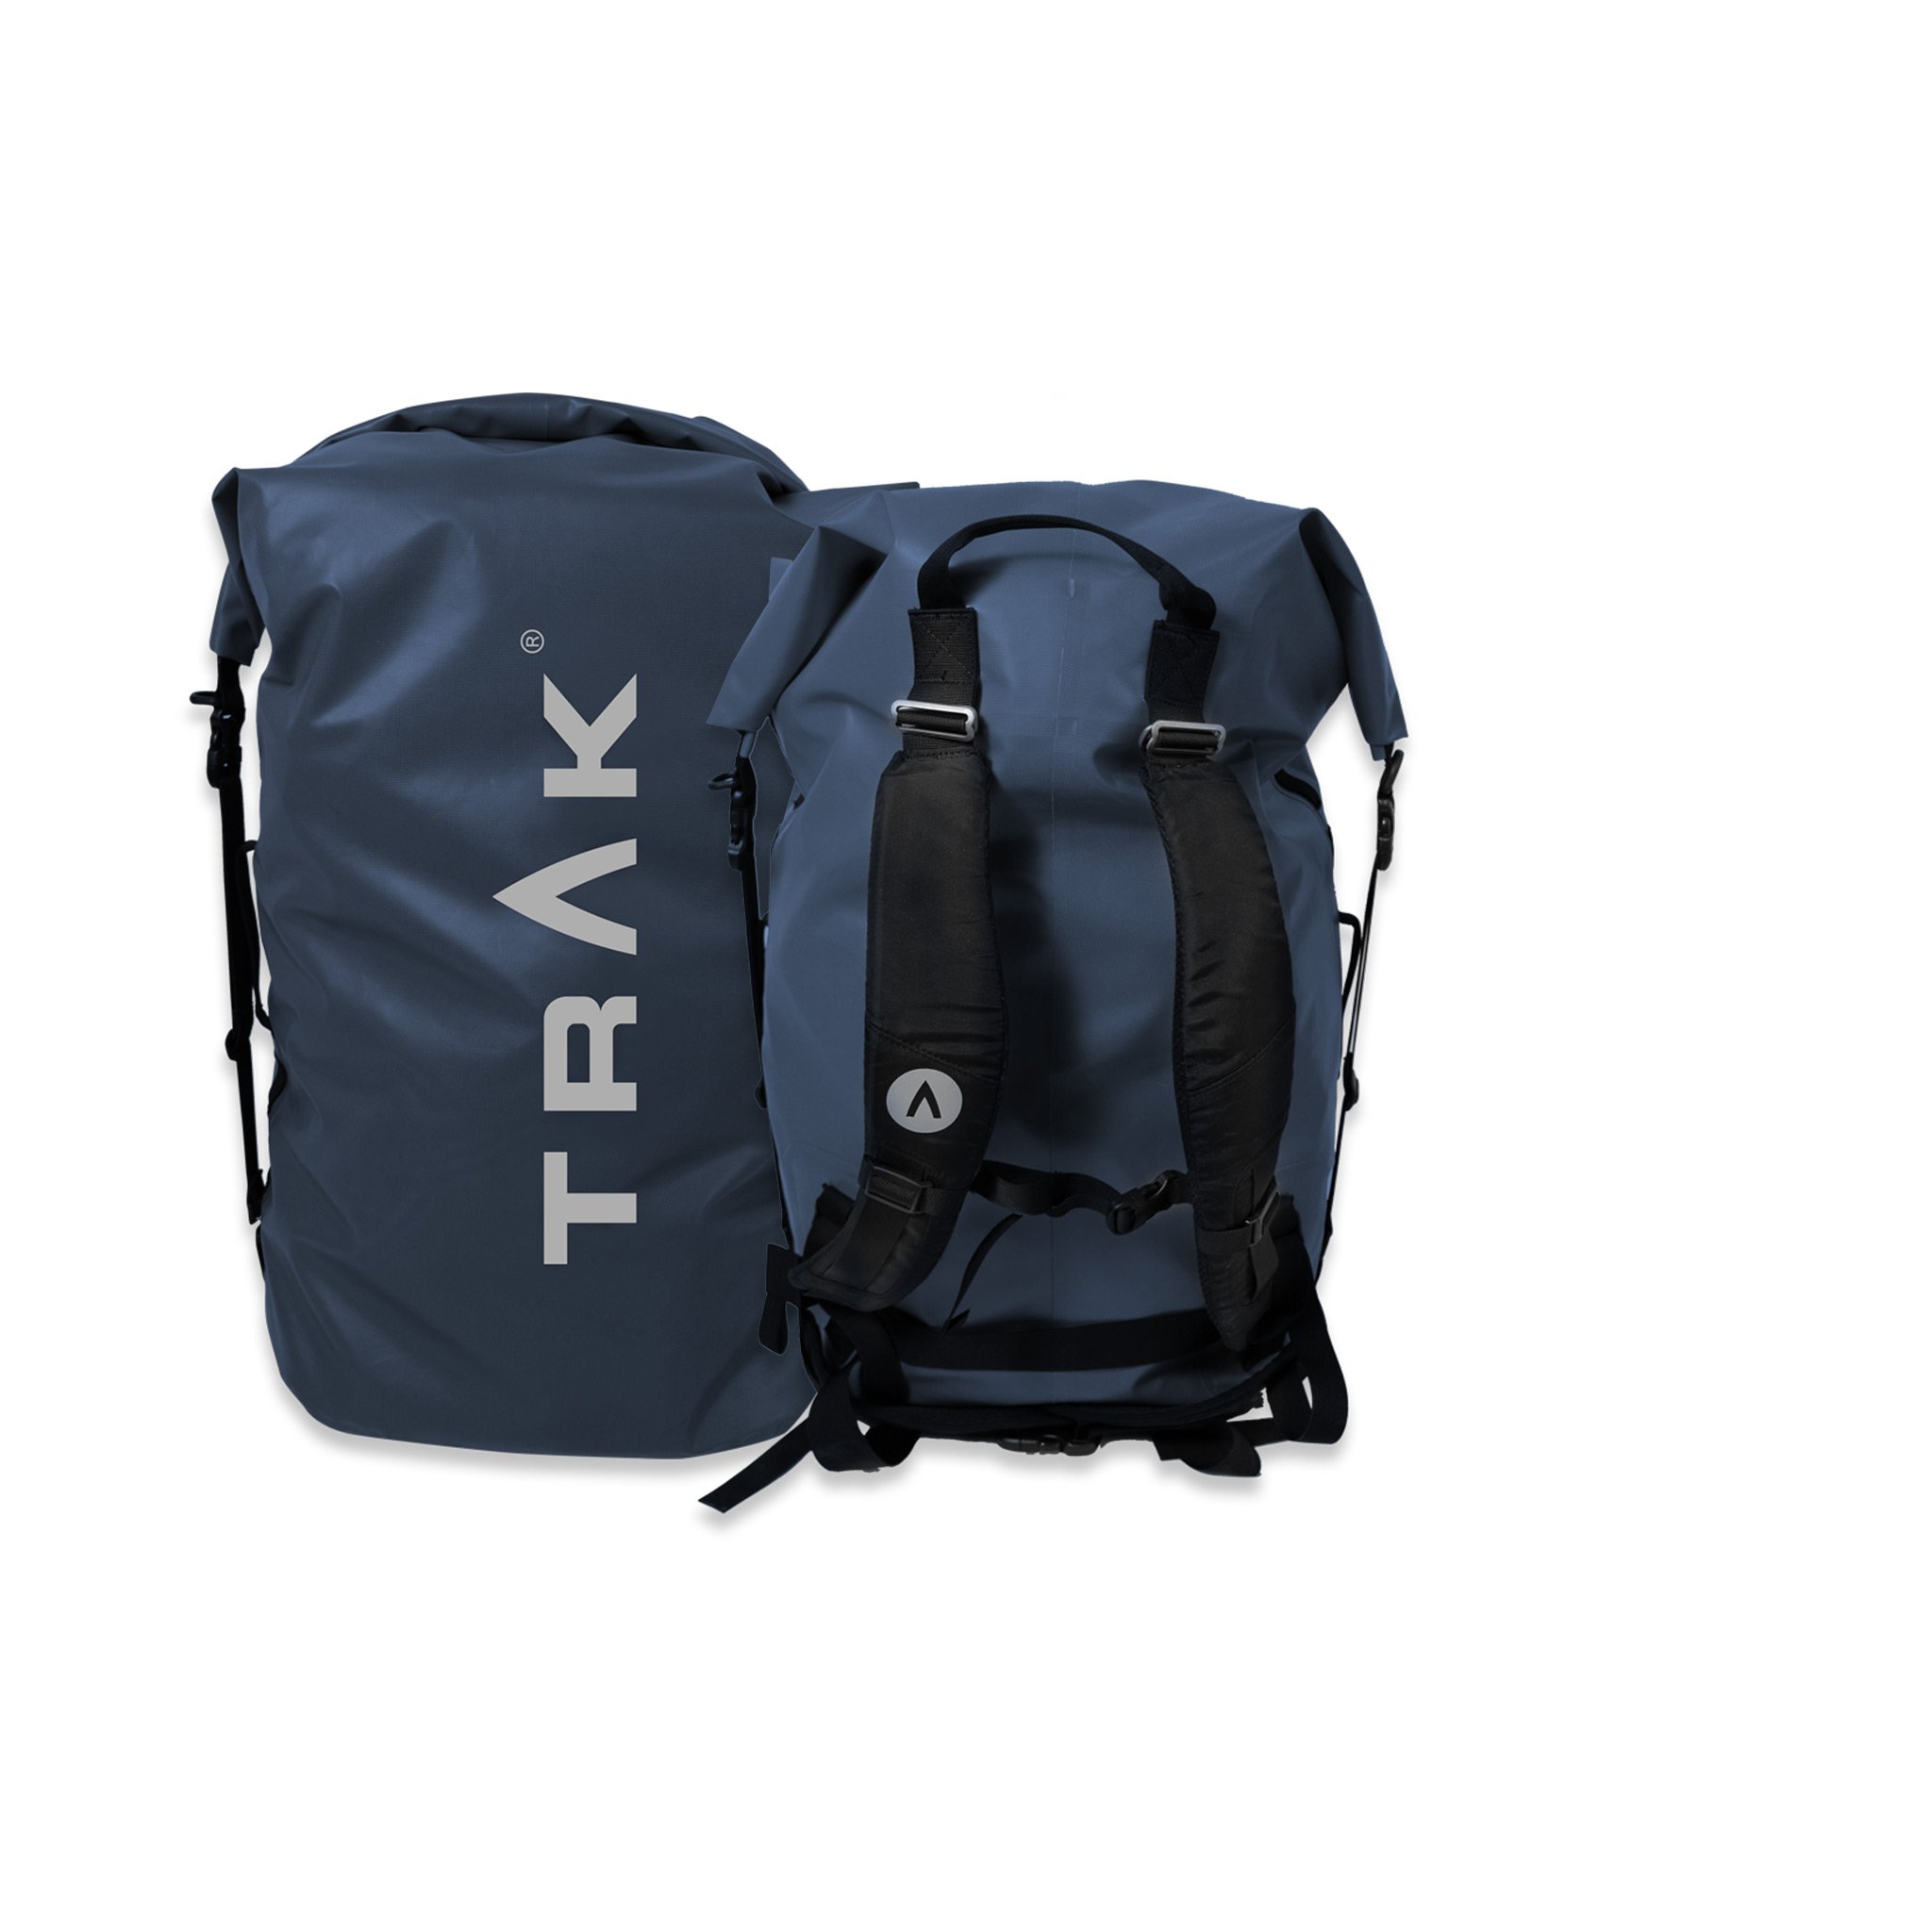 Waterproof Bags, Boxes, Cases & Packs - Backpacks, Phone Cases